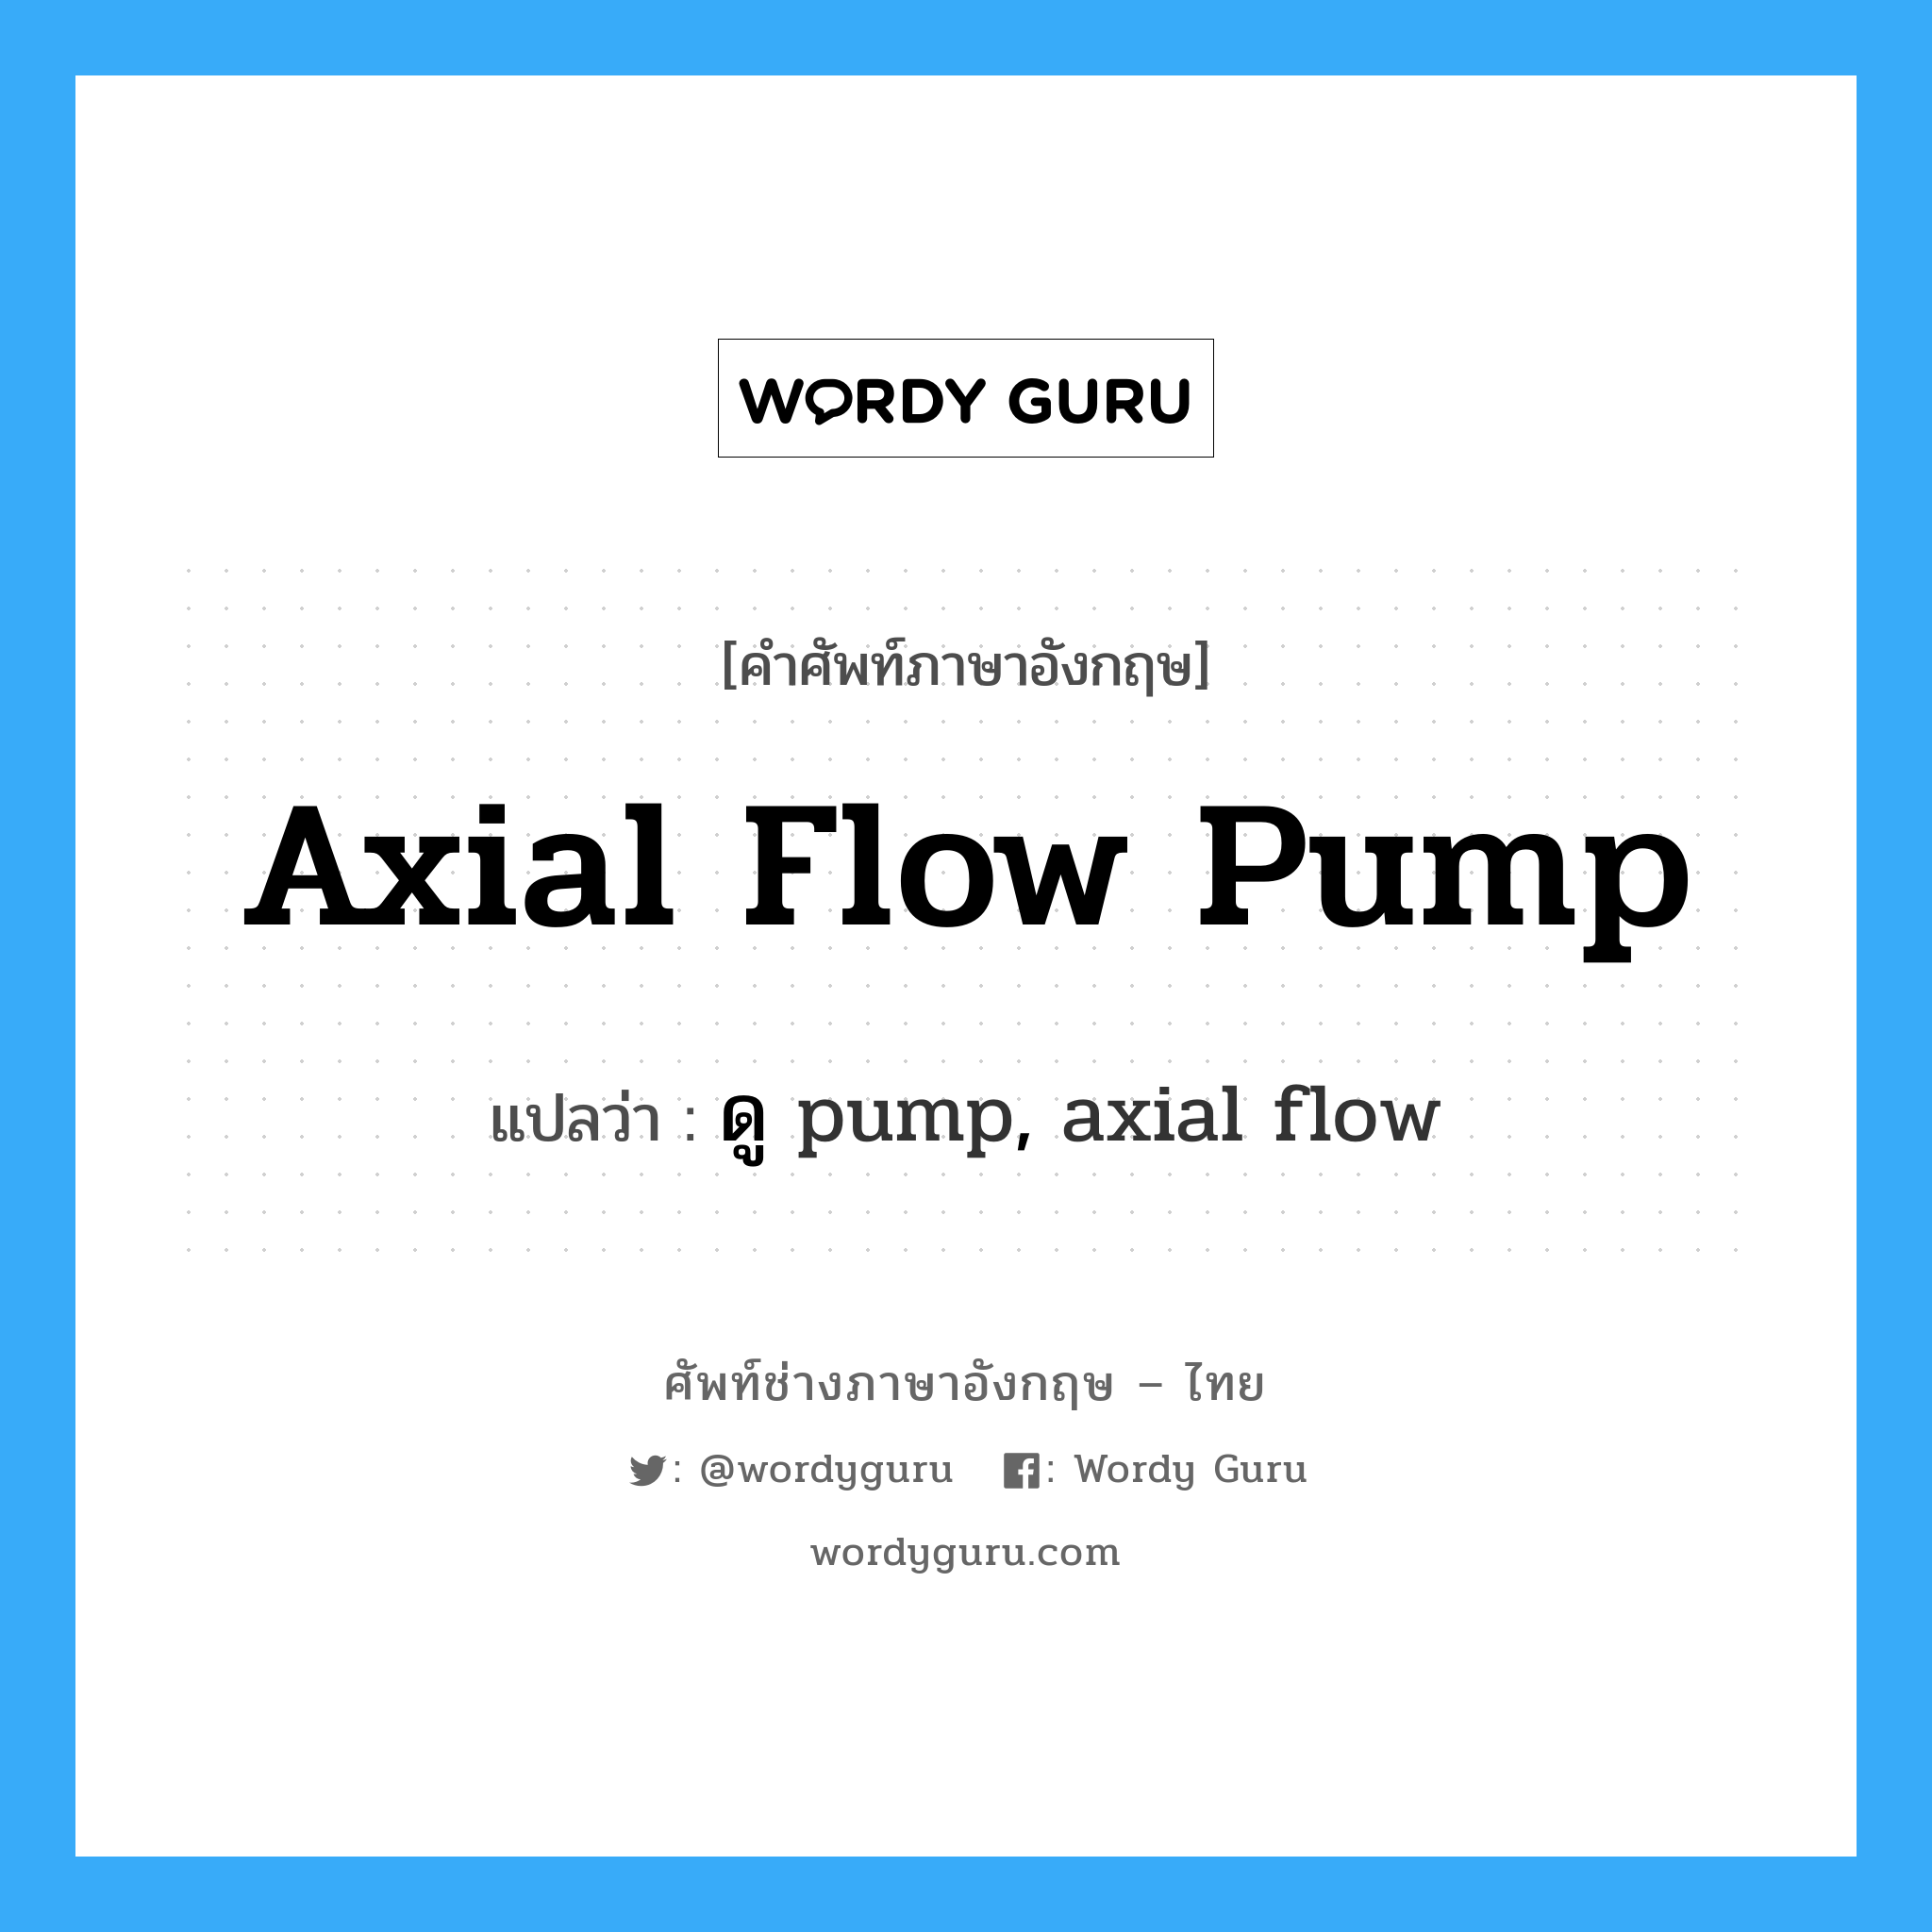 axial flow pump แปลว่า?, คำศัพท์ช่างภาษาอังกฤษ - ไทย axial flow pump คำศัพท์ภาษาอังกฤษ axial flow pump แปลว่า ดู pump, axial flow